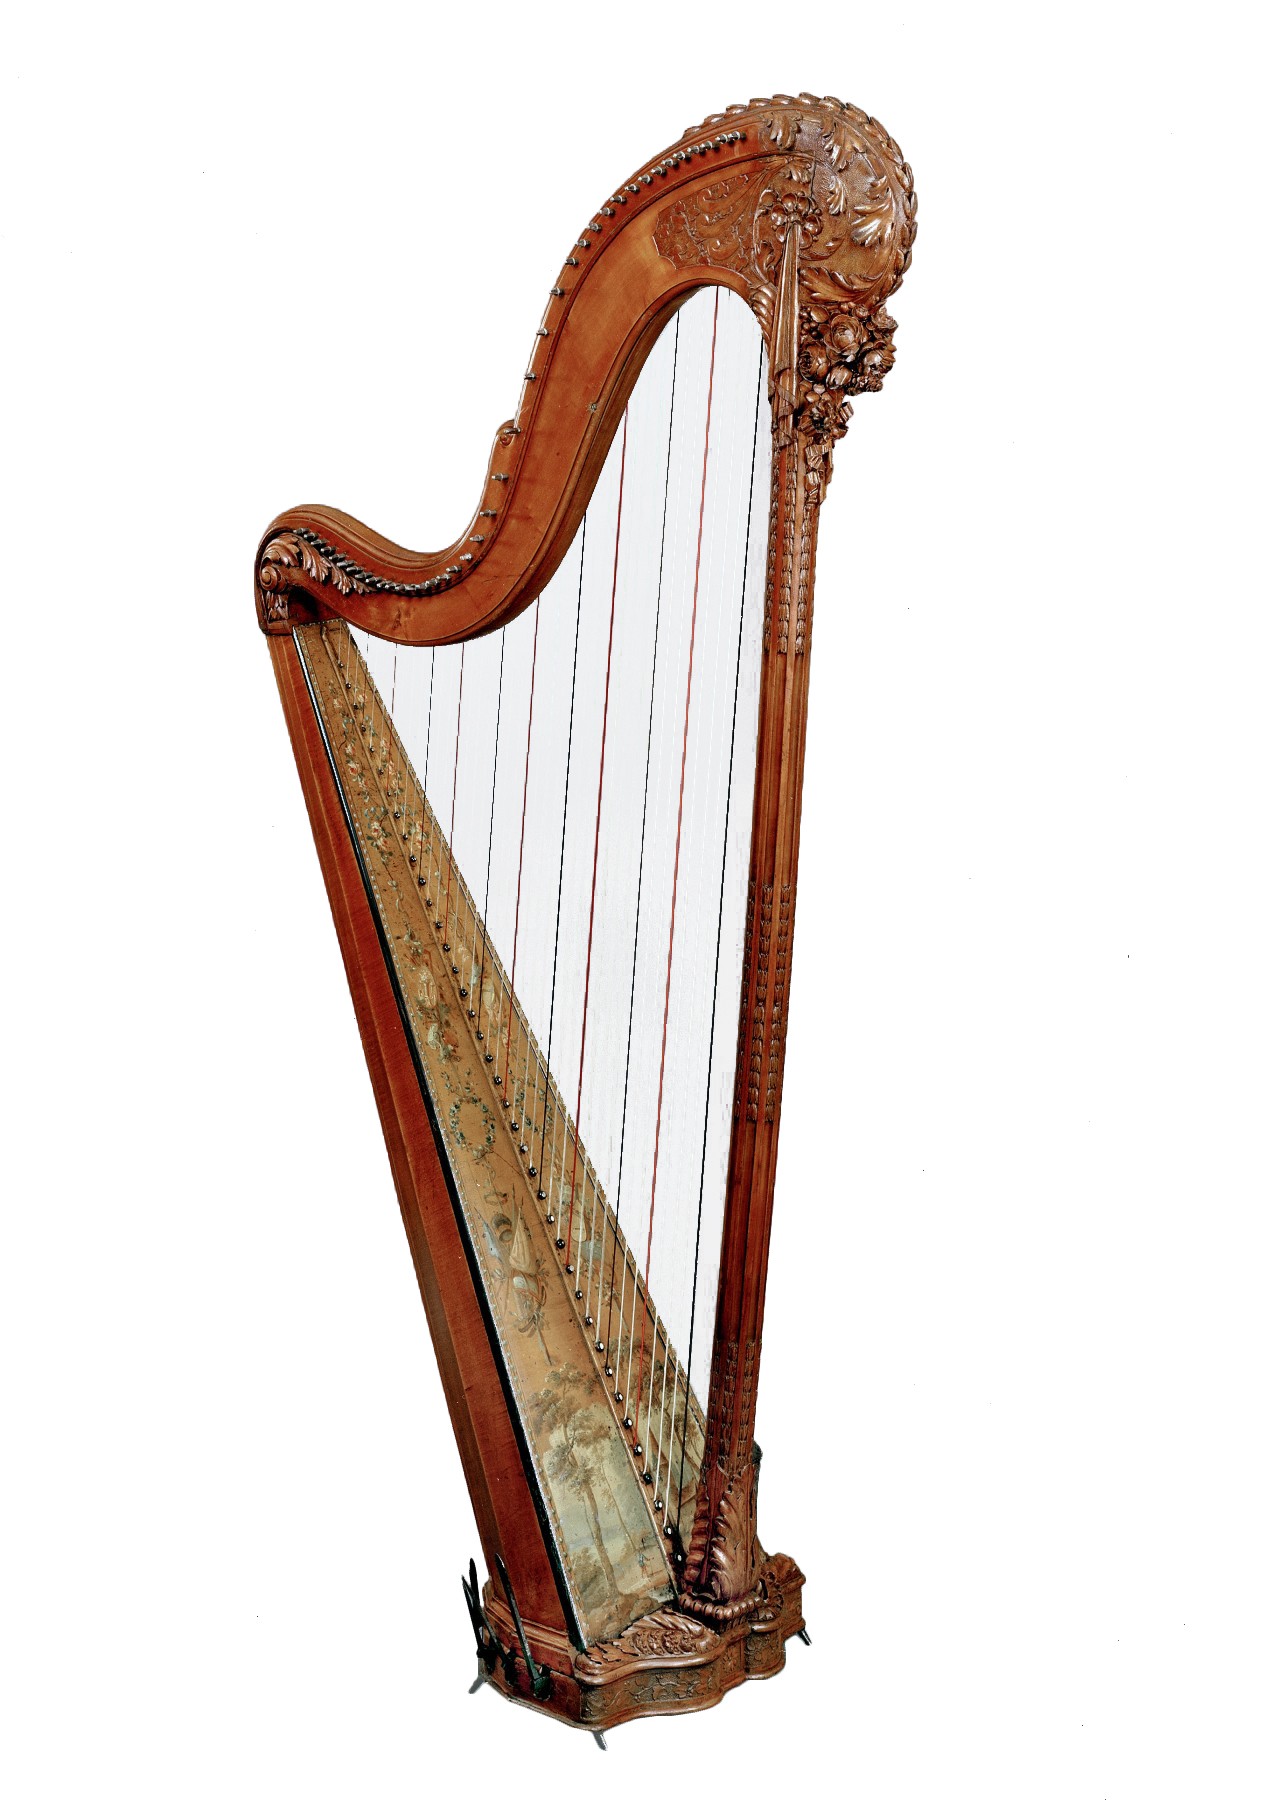 Harpe d'époque Louis XVI par Jean-Henri Naderman (1734-1799) - XVIIIe  siècle - N.89547